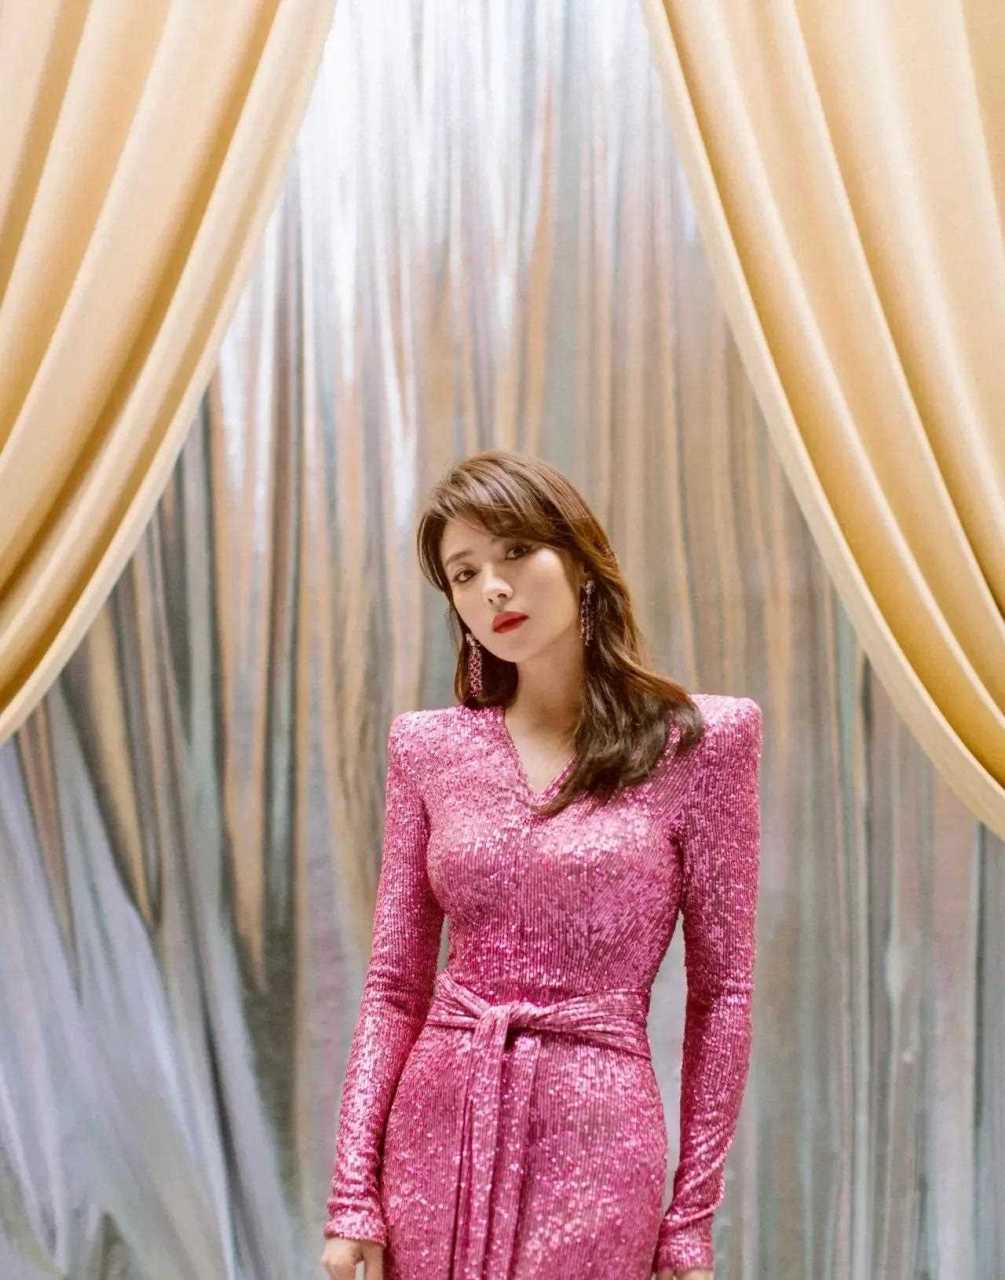 刘涛身穿粉色礼服,如美人鱼般的梦幻,这气质也太迷人了